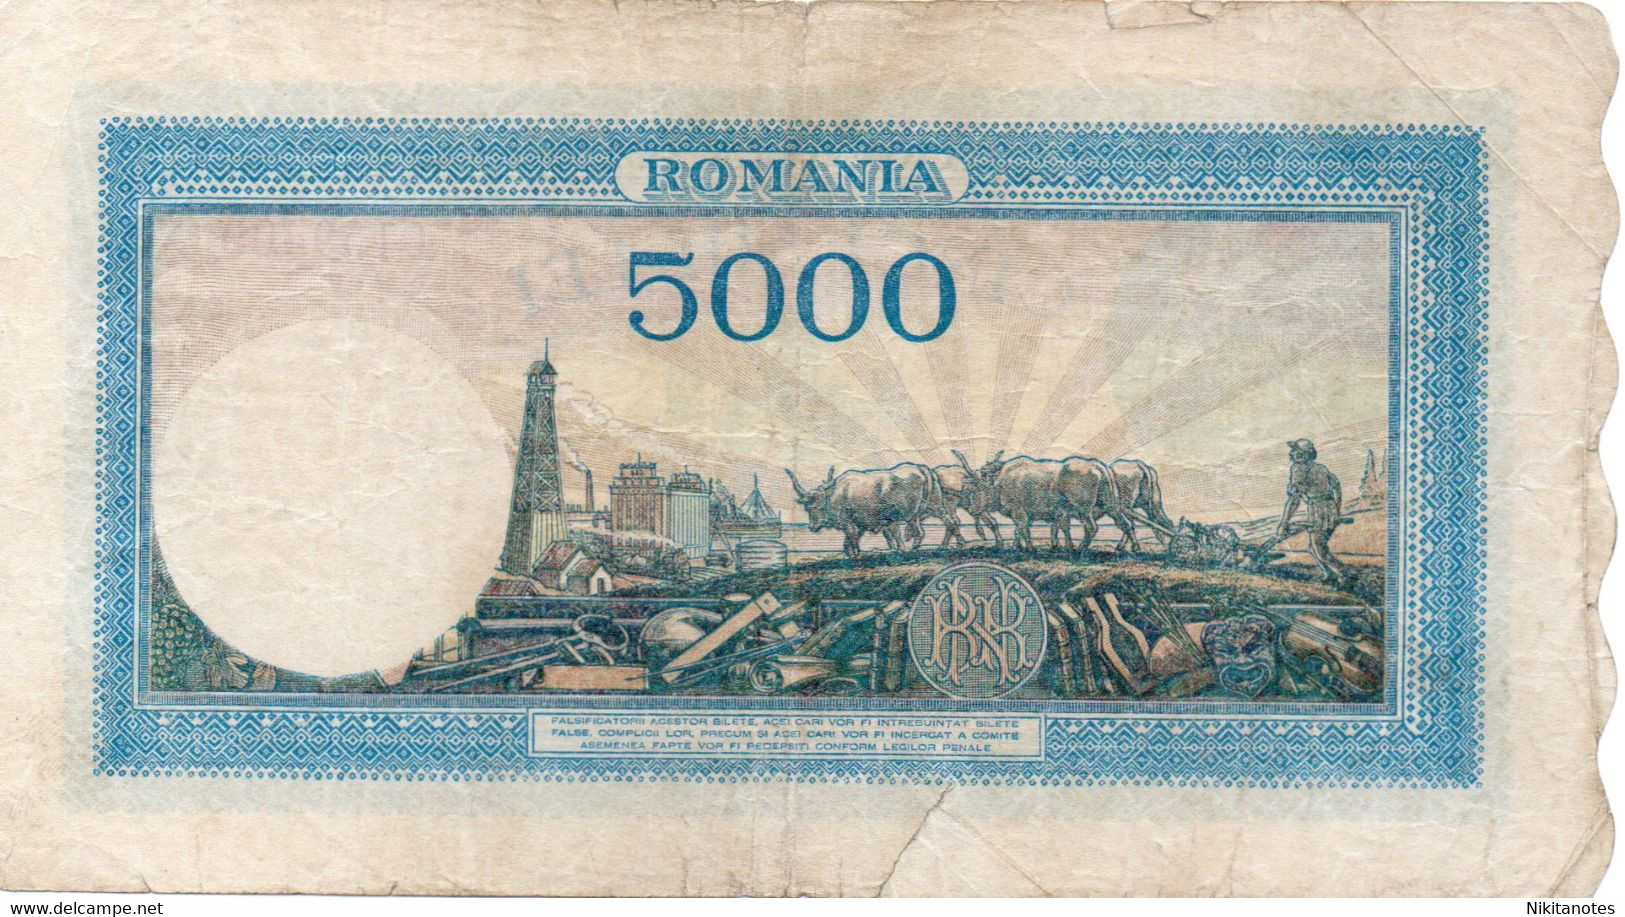 1945 28 SEPT ROMANIA Banconote 5000 Lei Note See Scan - Romania